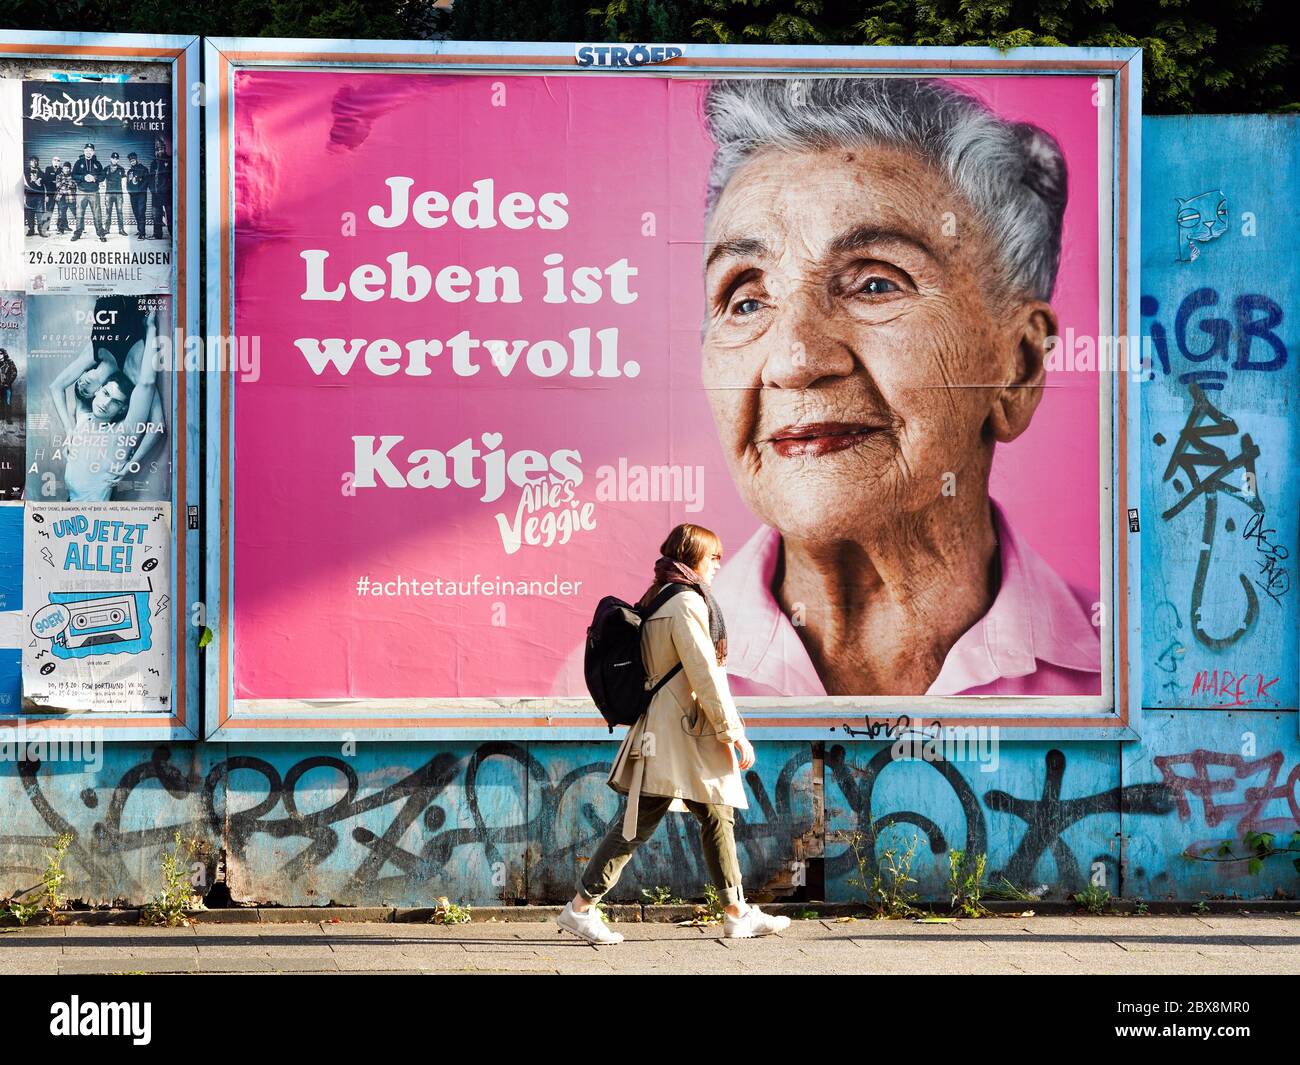 Dortmund, 6.6.2020: 'Jedes Leben ist wertvoll', Plakat des Süsswarenherstellers Katjes mit einer Anspielung auf die Black-Lives-Matters-Bewegung in den USA richtet sich in der Coronakrise an die Beachtung älterer Mitbürger. Stock Photo